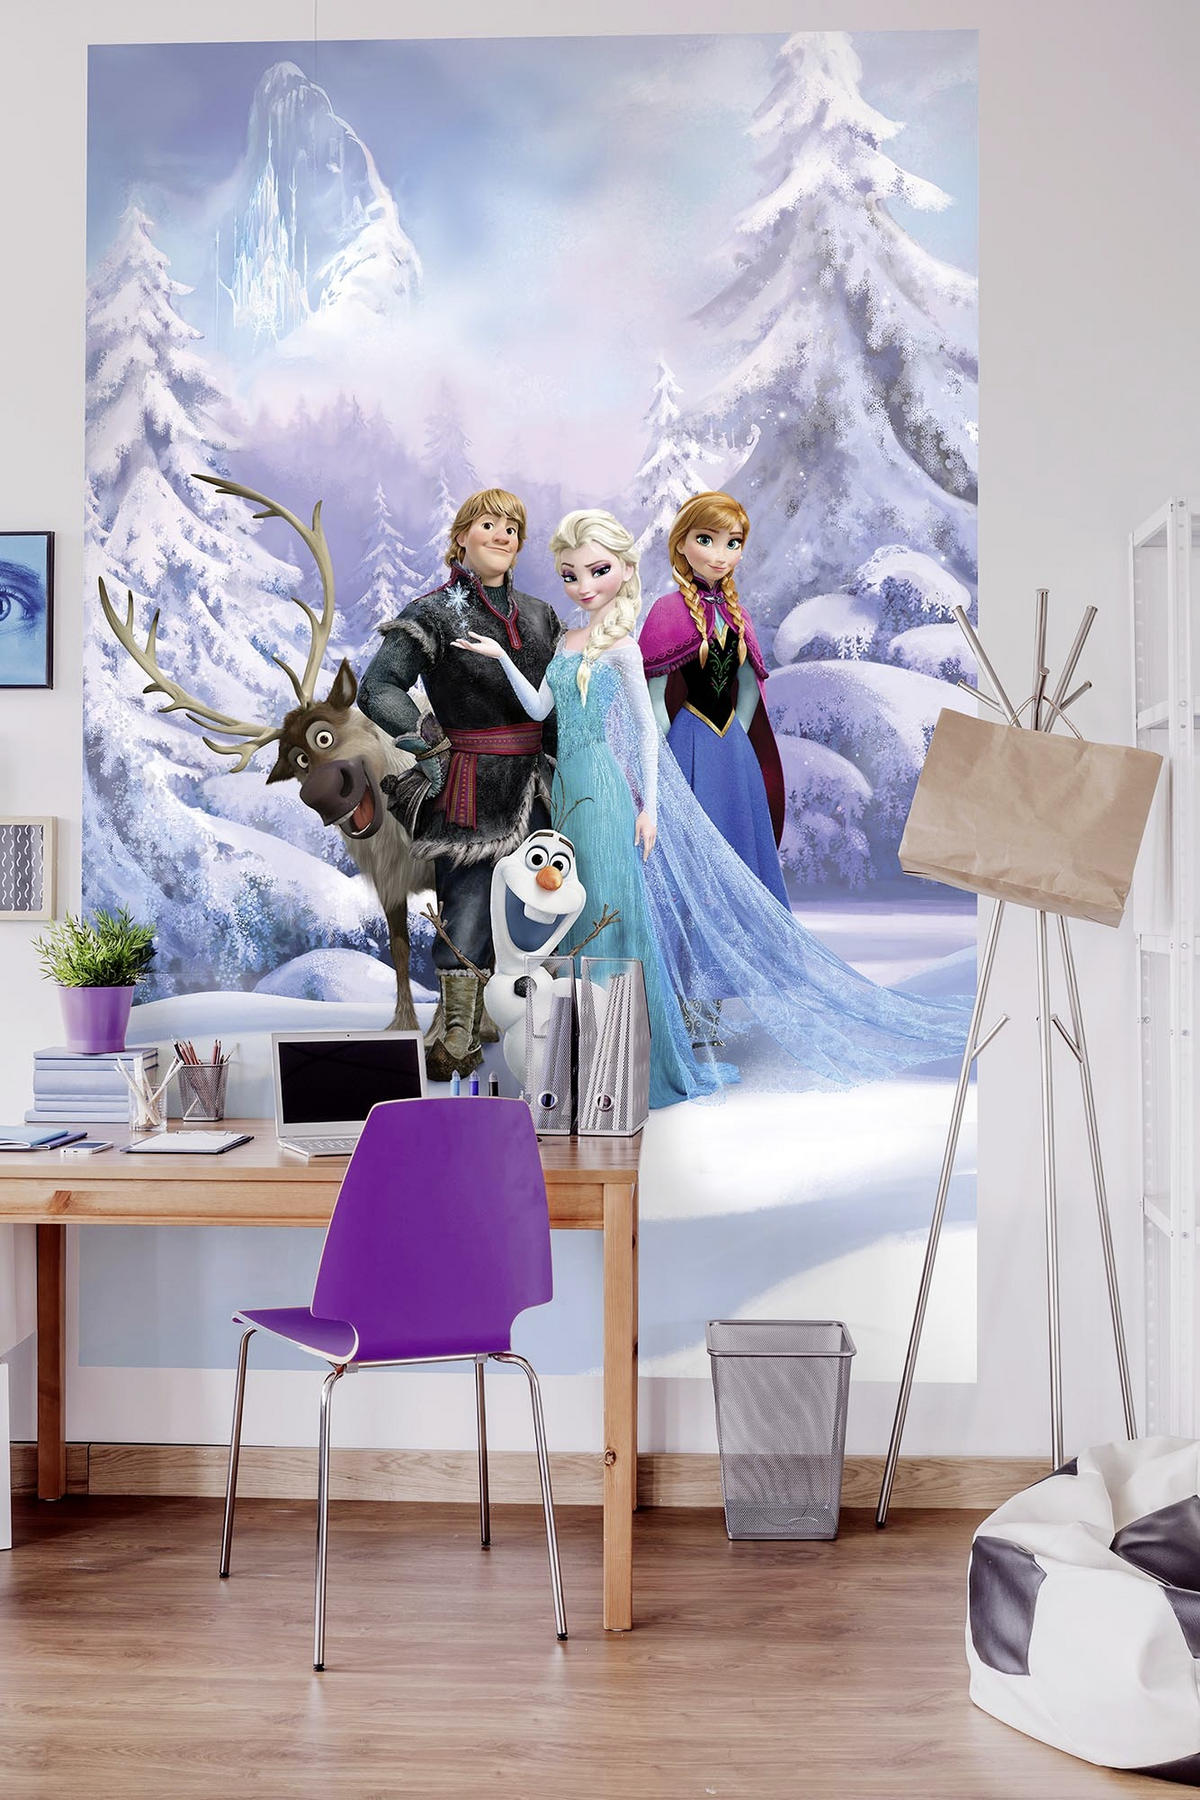 FOTOTAPETE Frozen  - Blau/Multicolor, Papier (184/254cm) - Disney